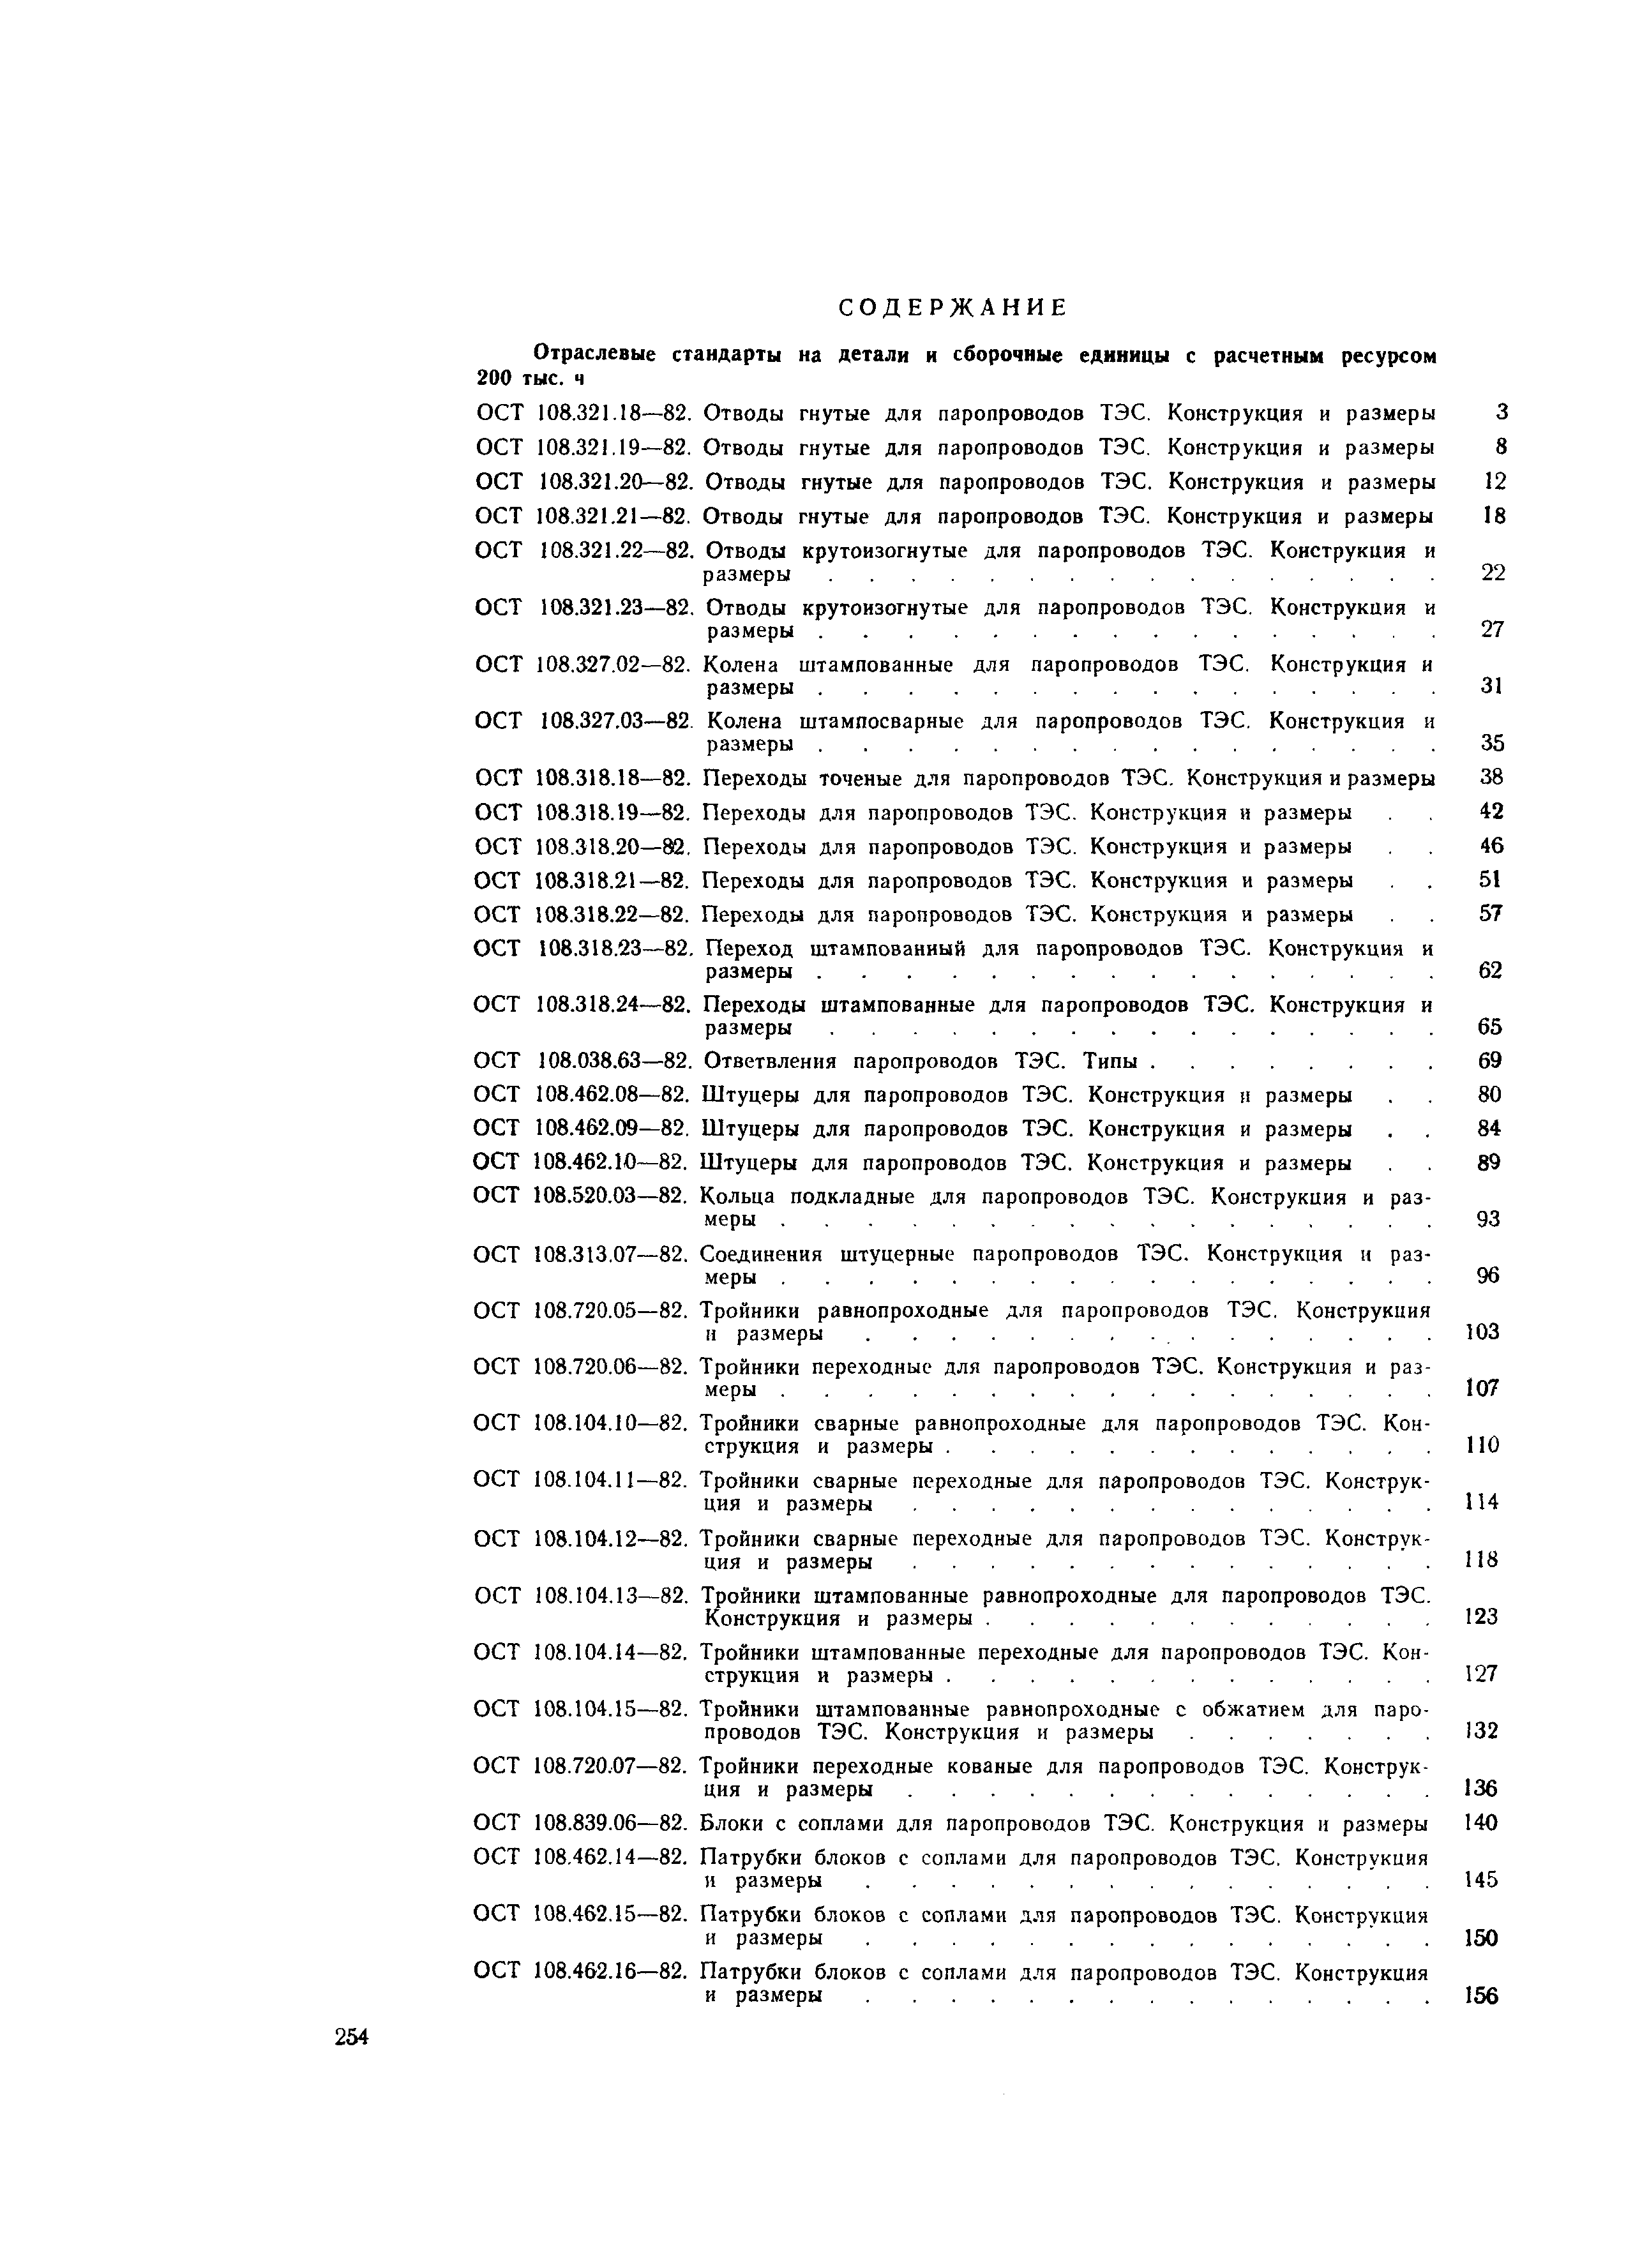 ОСТ 108.104.17-82